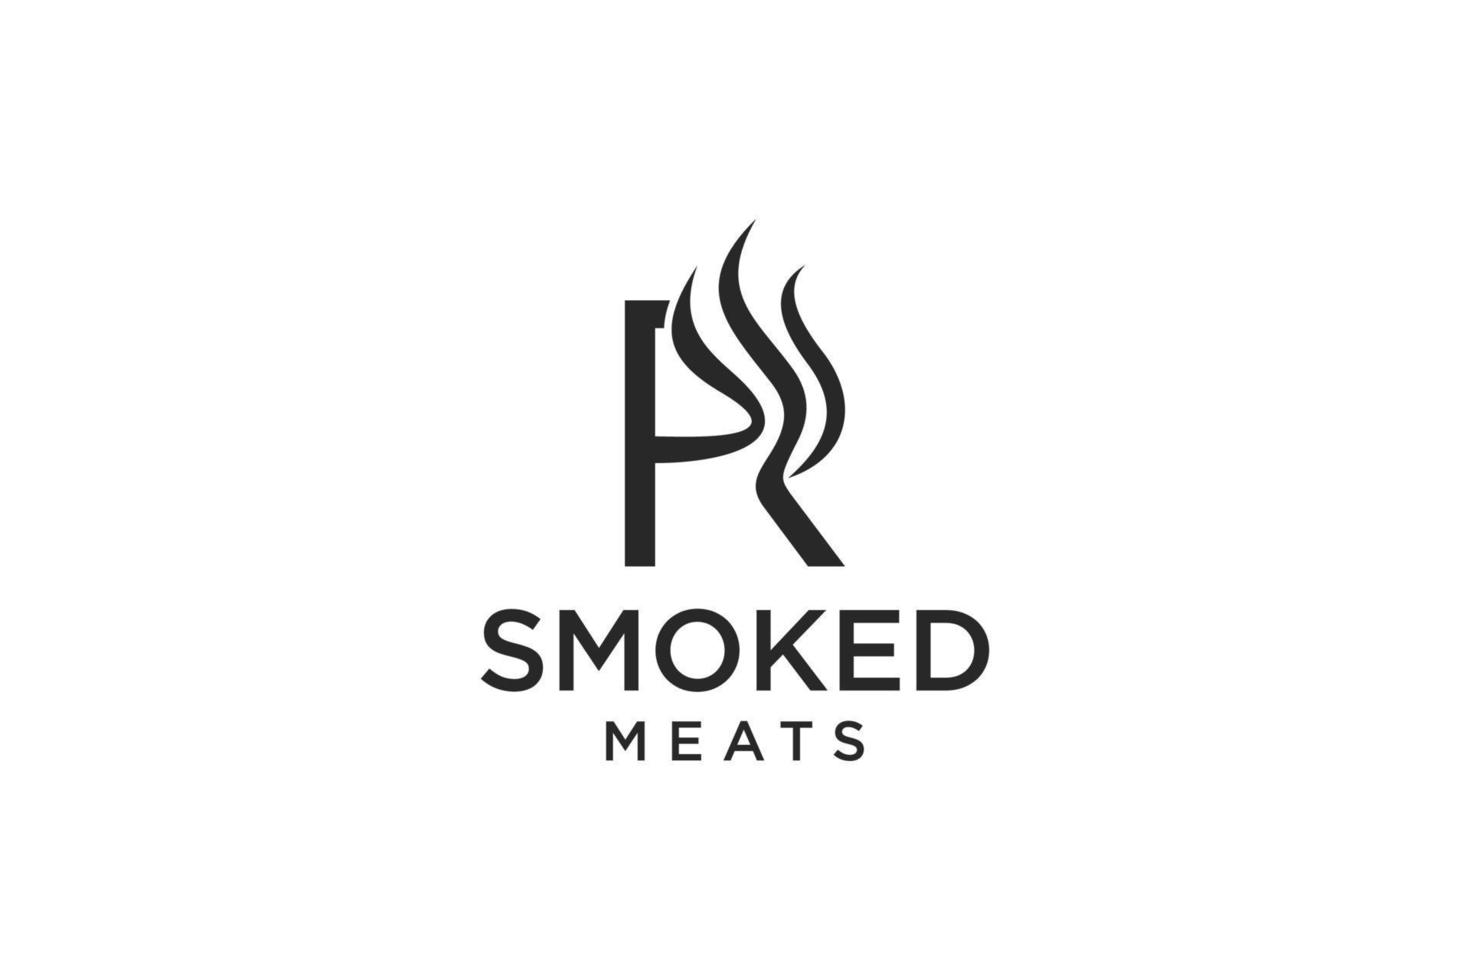 Letter R for Smoky restaurant logo design inspiration vector